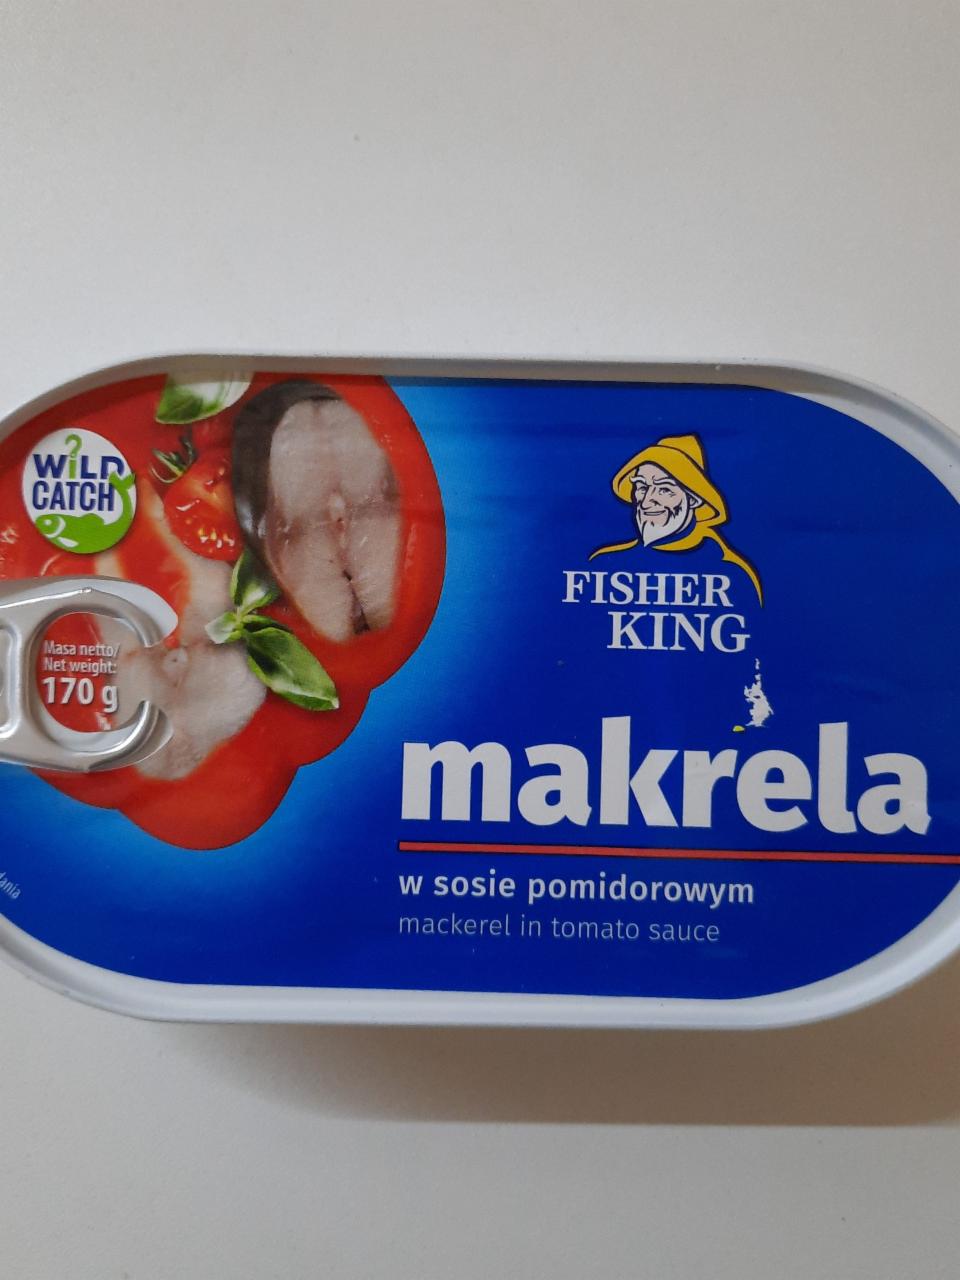 Zdjęcia - Makrela w sosie pomidorowym fisher king